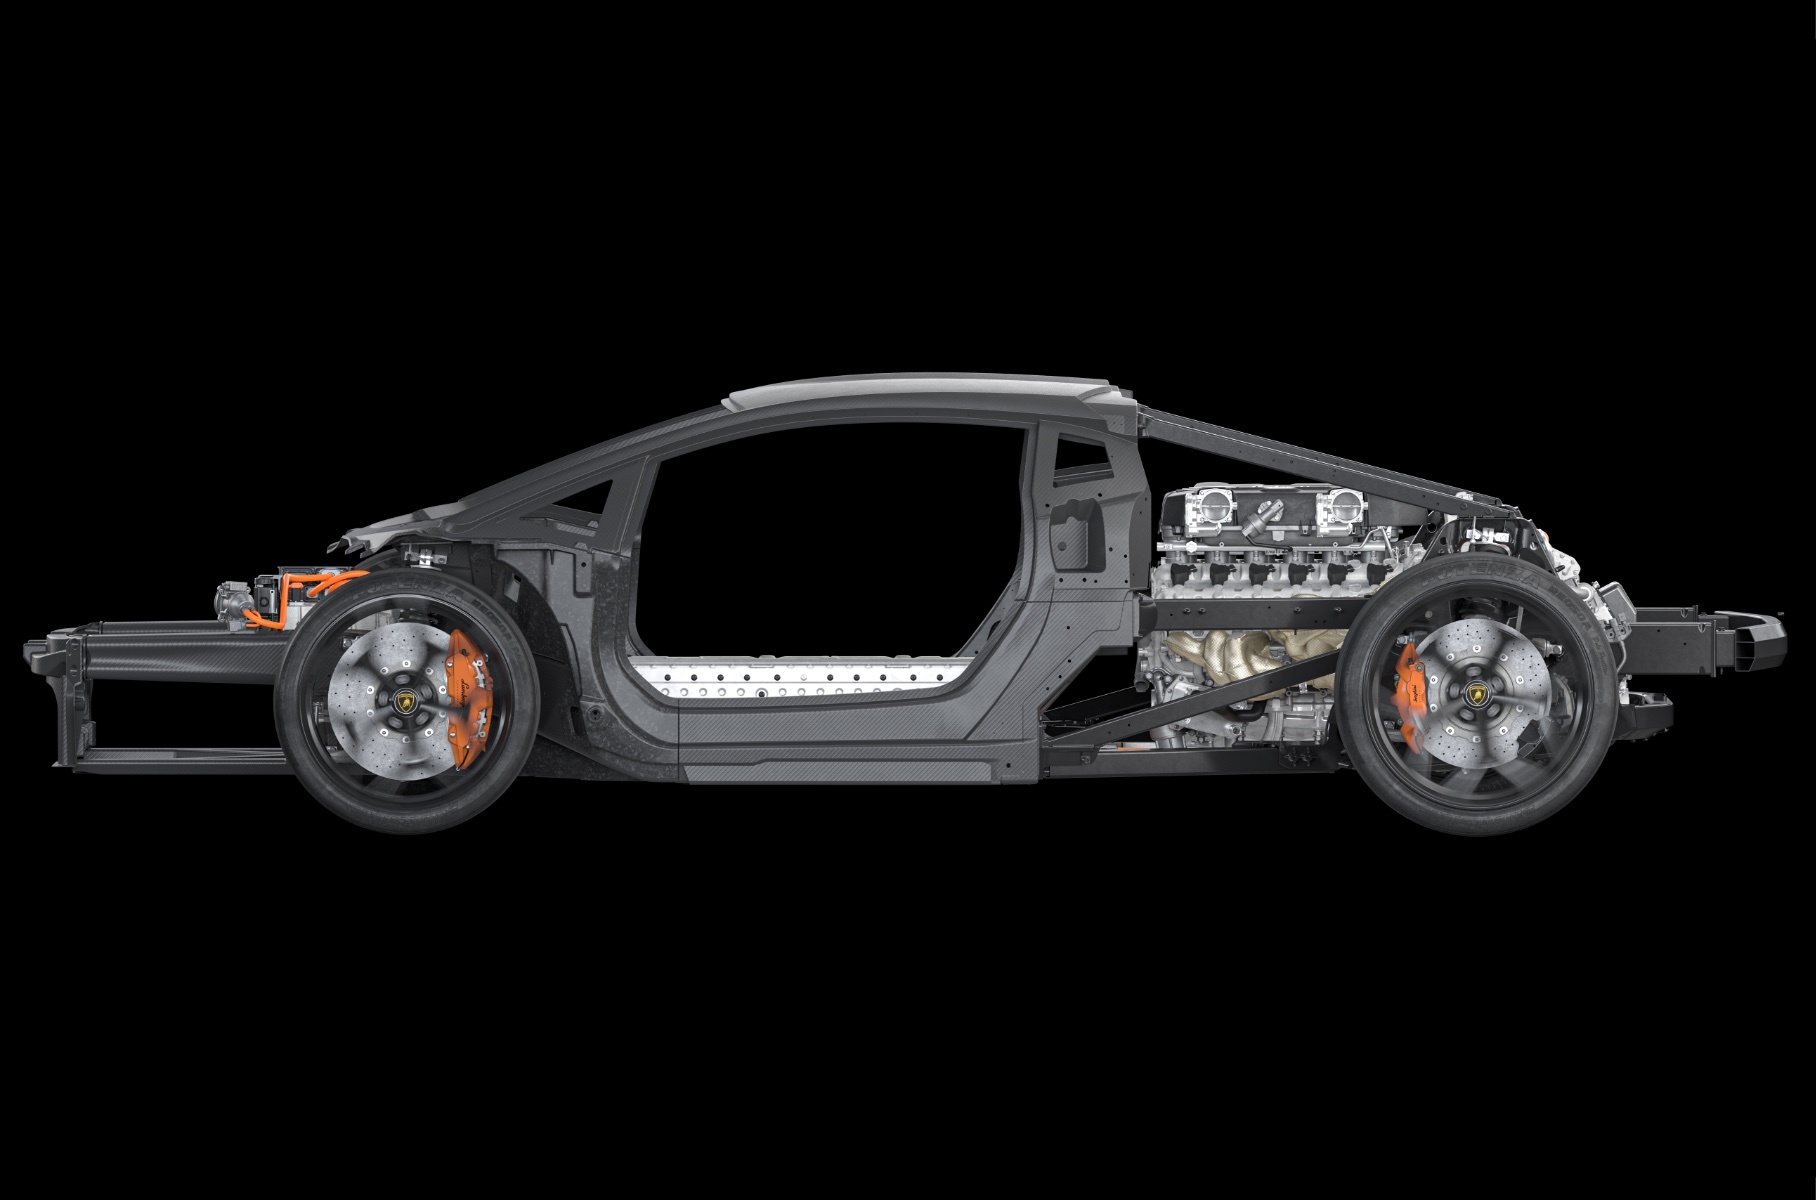 Компания Lamborghini поделилась подробной информацией о преемнике суперкара Aventador